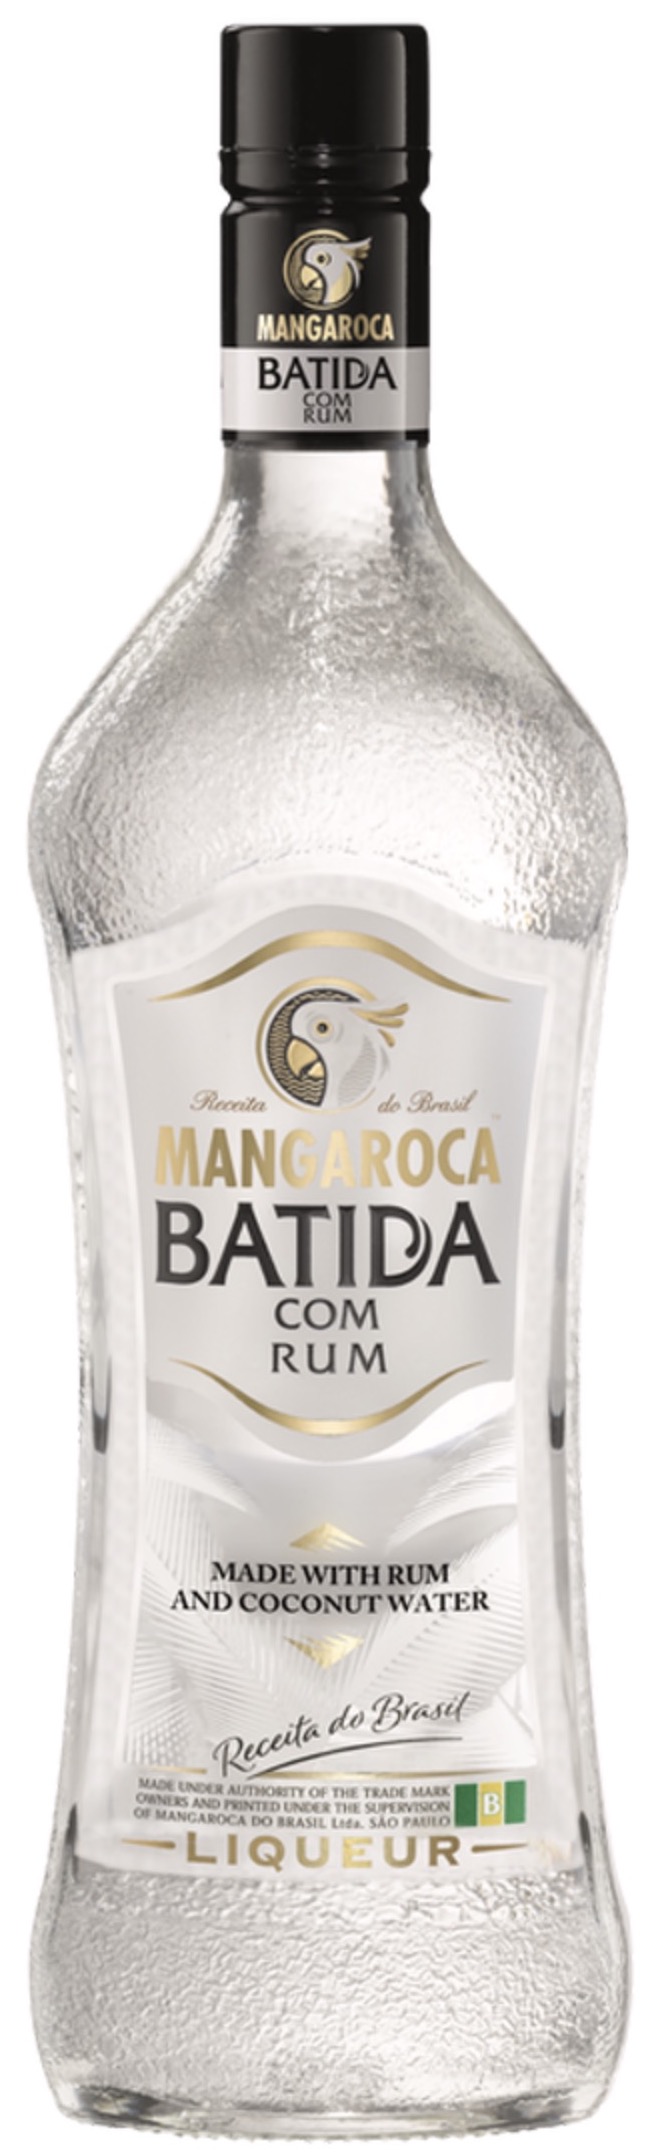 Mangaroca Batida Com Rum 21% vol. 0,7L